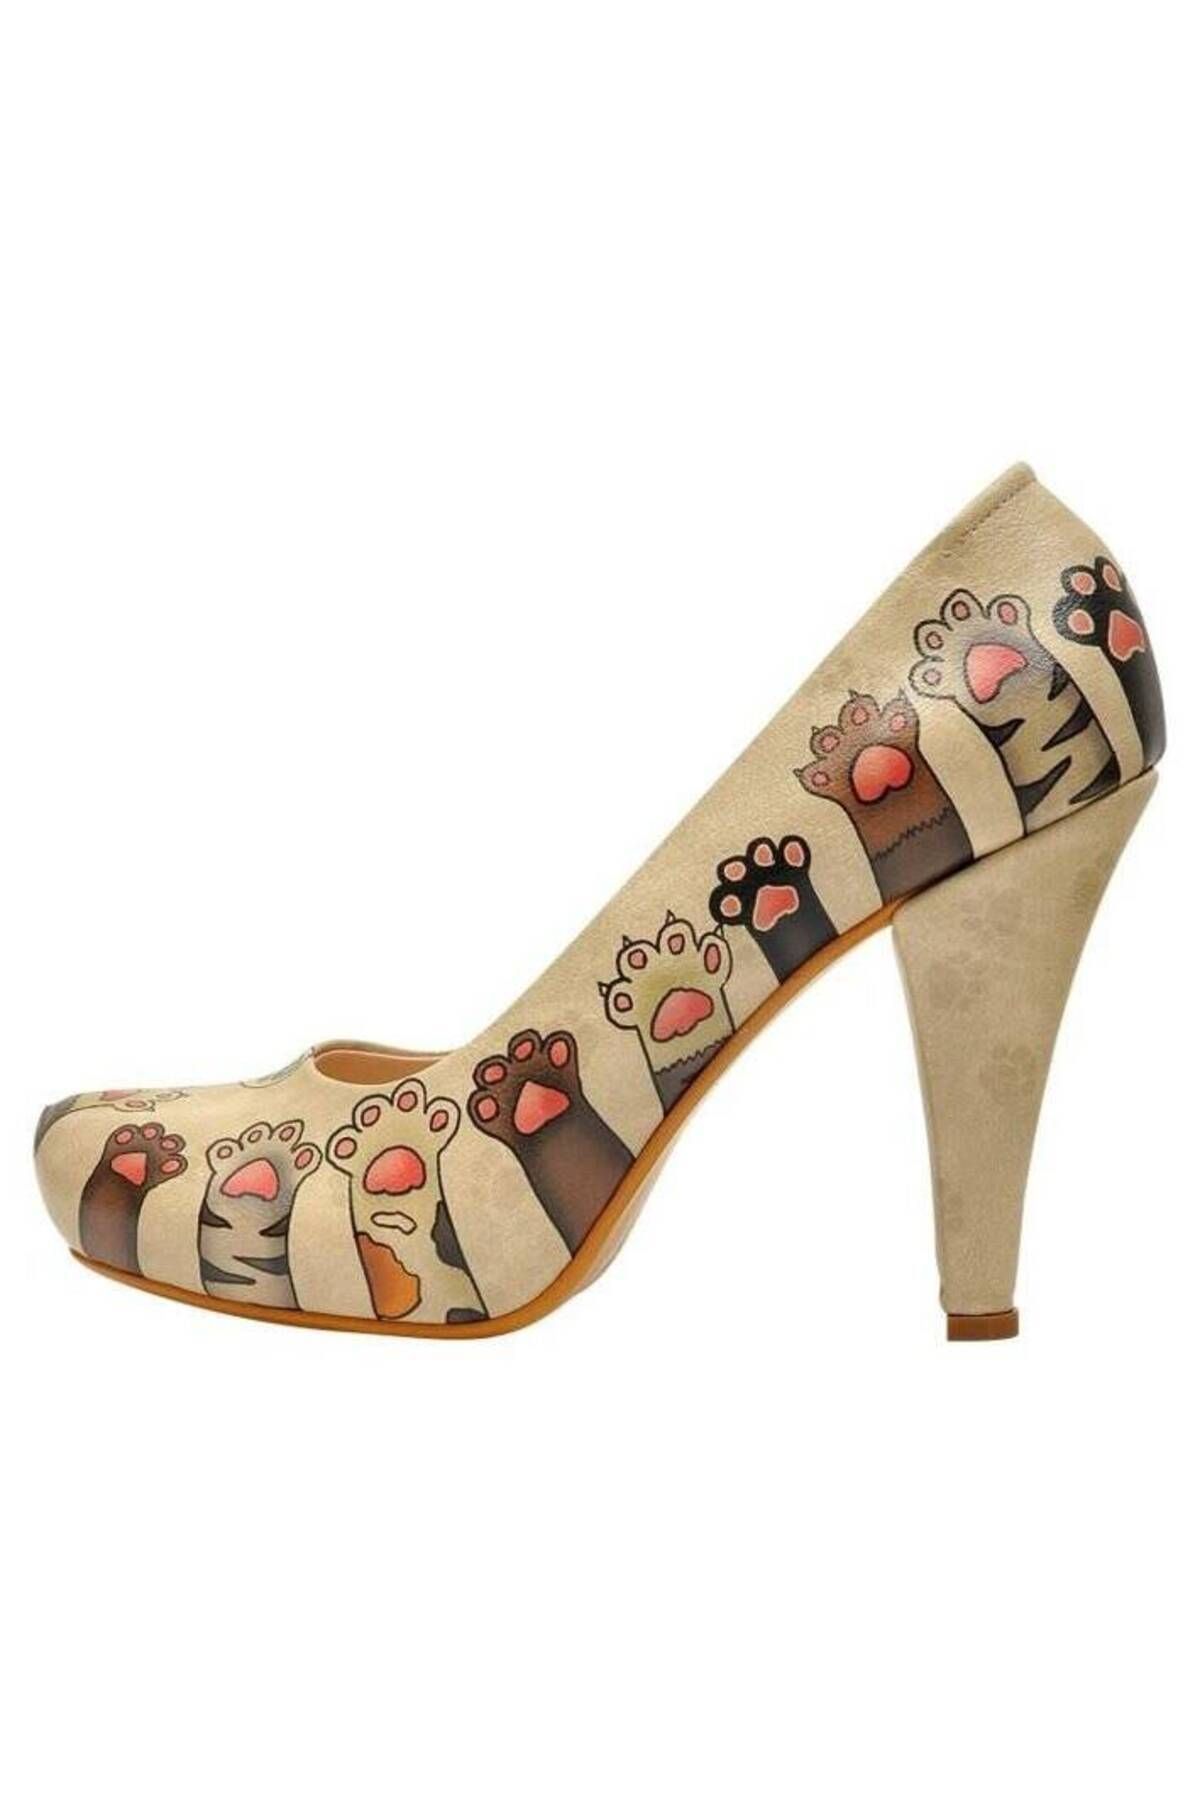 Dogo Kadın Vegan Deri Bej Topuklu Ayakkabı - Yummy Tasarım